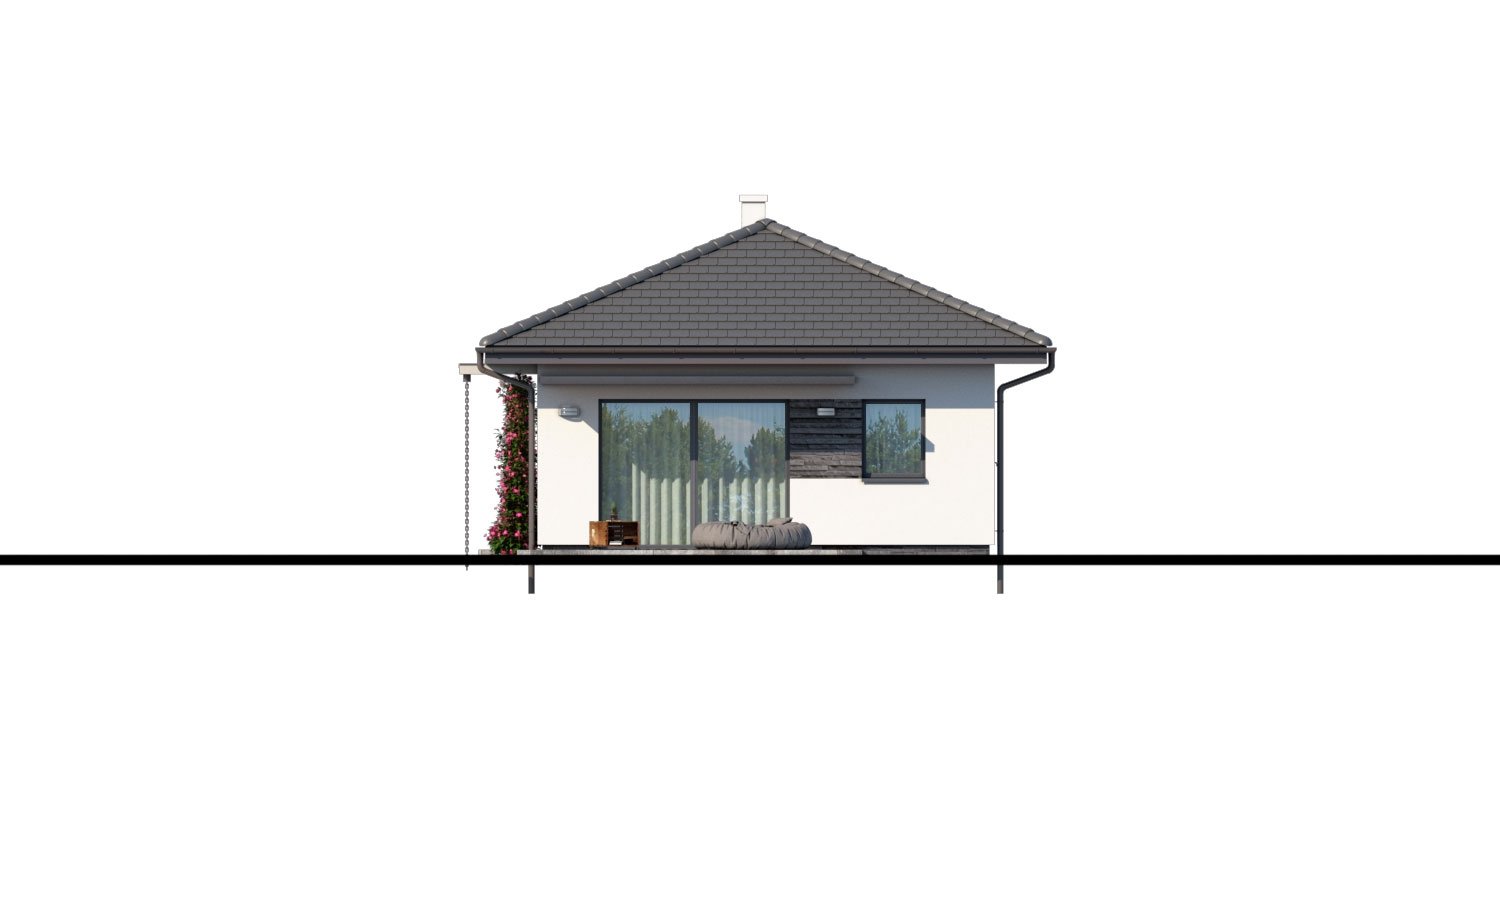 Zrkadlový pohľad 2. - Zděný projekt 4-pokojového domu na dlouhý a úzký pozemek s bočním vstupem.